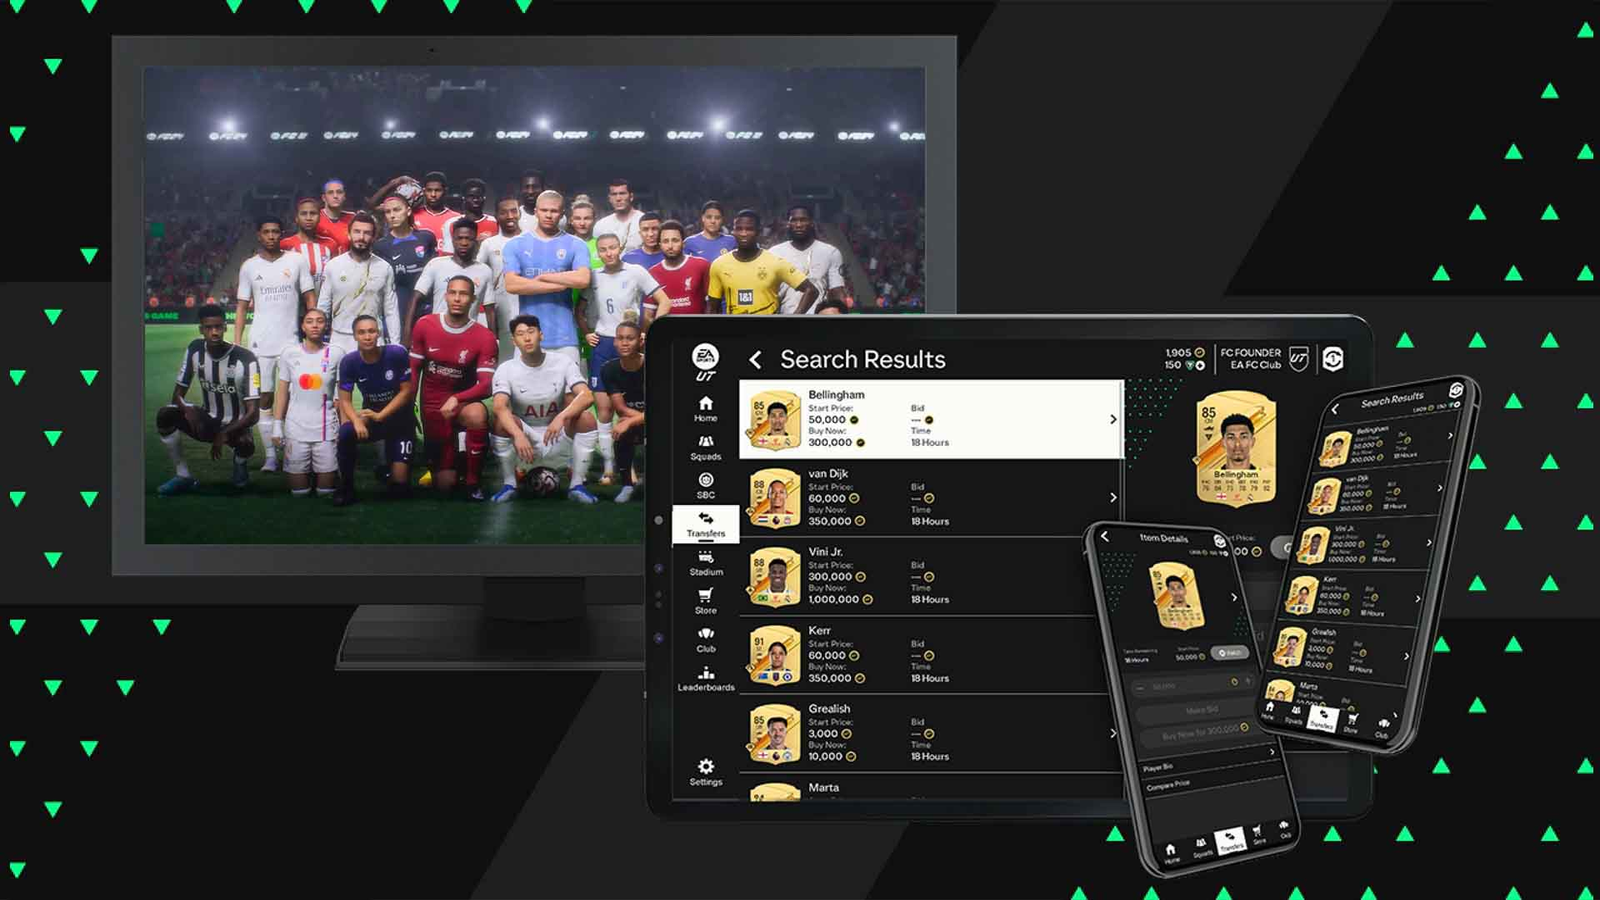 EA FC 24 - Companion App jetzt verfügbar auf Android und iOS